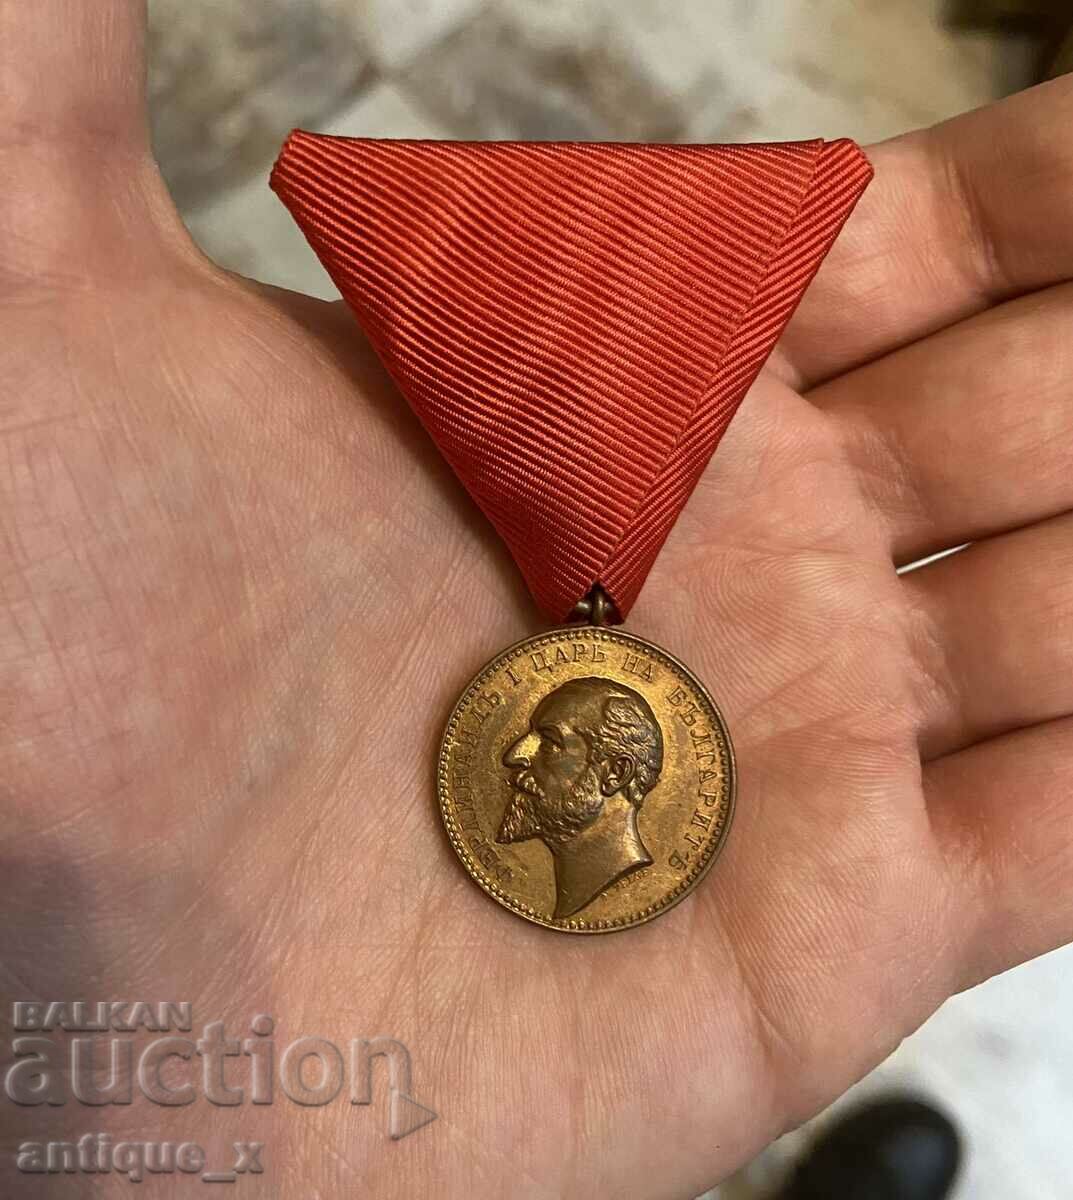 Βασιλικό Μετάλλιο "For Merit" - Ferdinand I - P. Telge - Σφραγίδα!